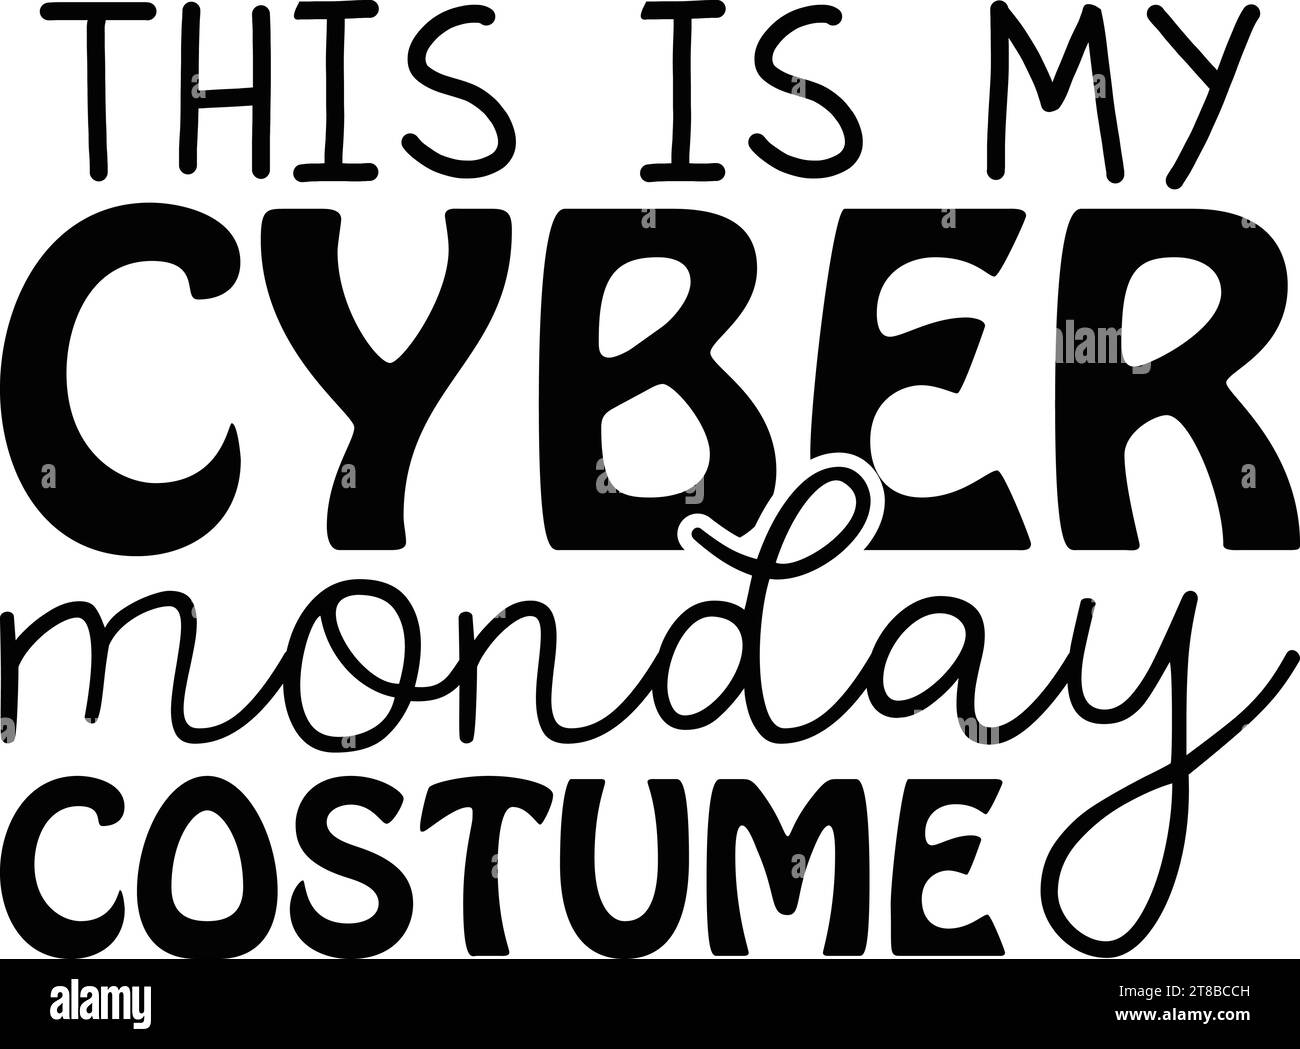 C'est mon Costume Cyber Monday Illustration de Vecteur